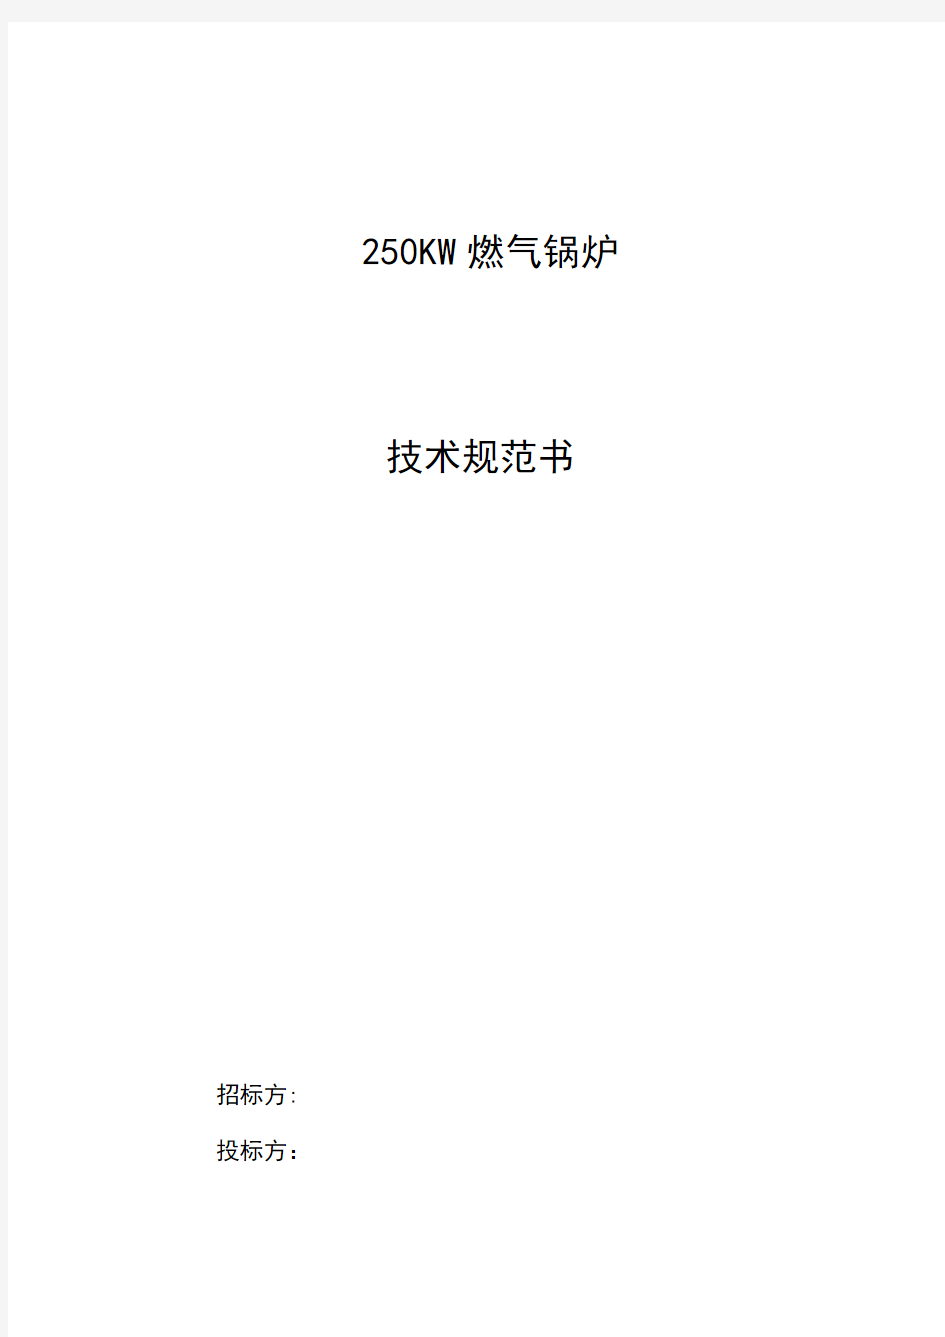 燃气锅炉技术规范书 218.6